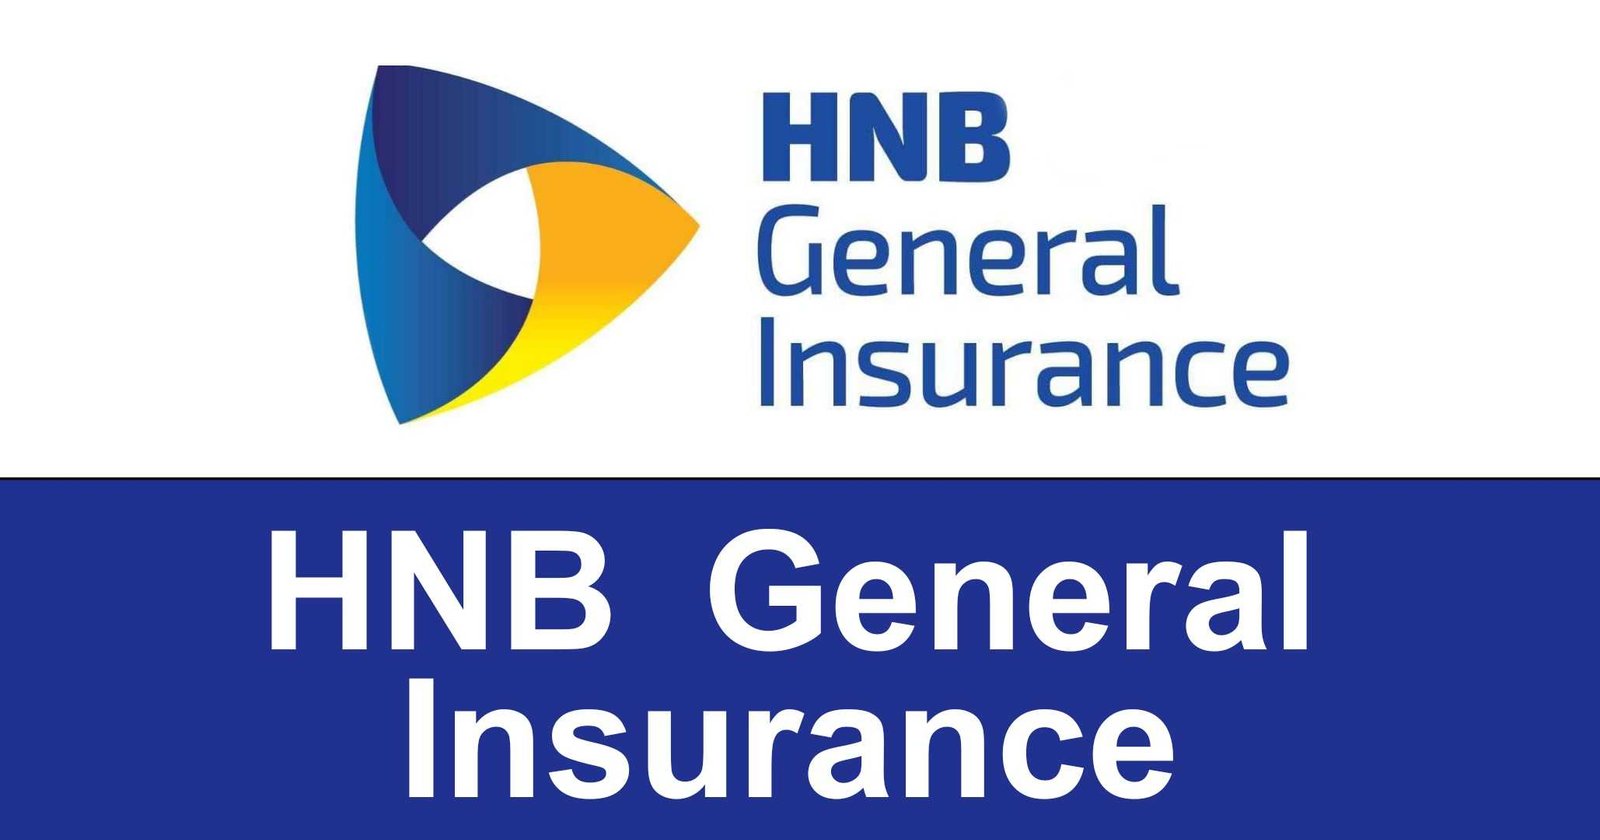 HNB General Insurance Limited Jobs Vacancies Recruitments